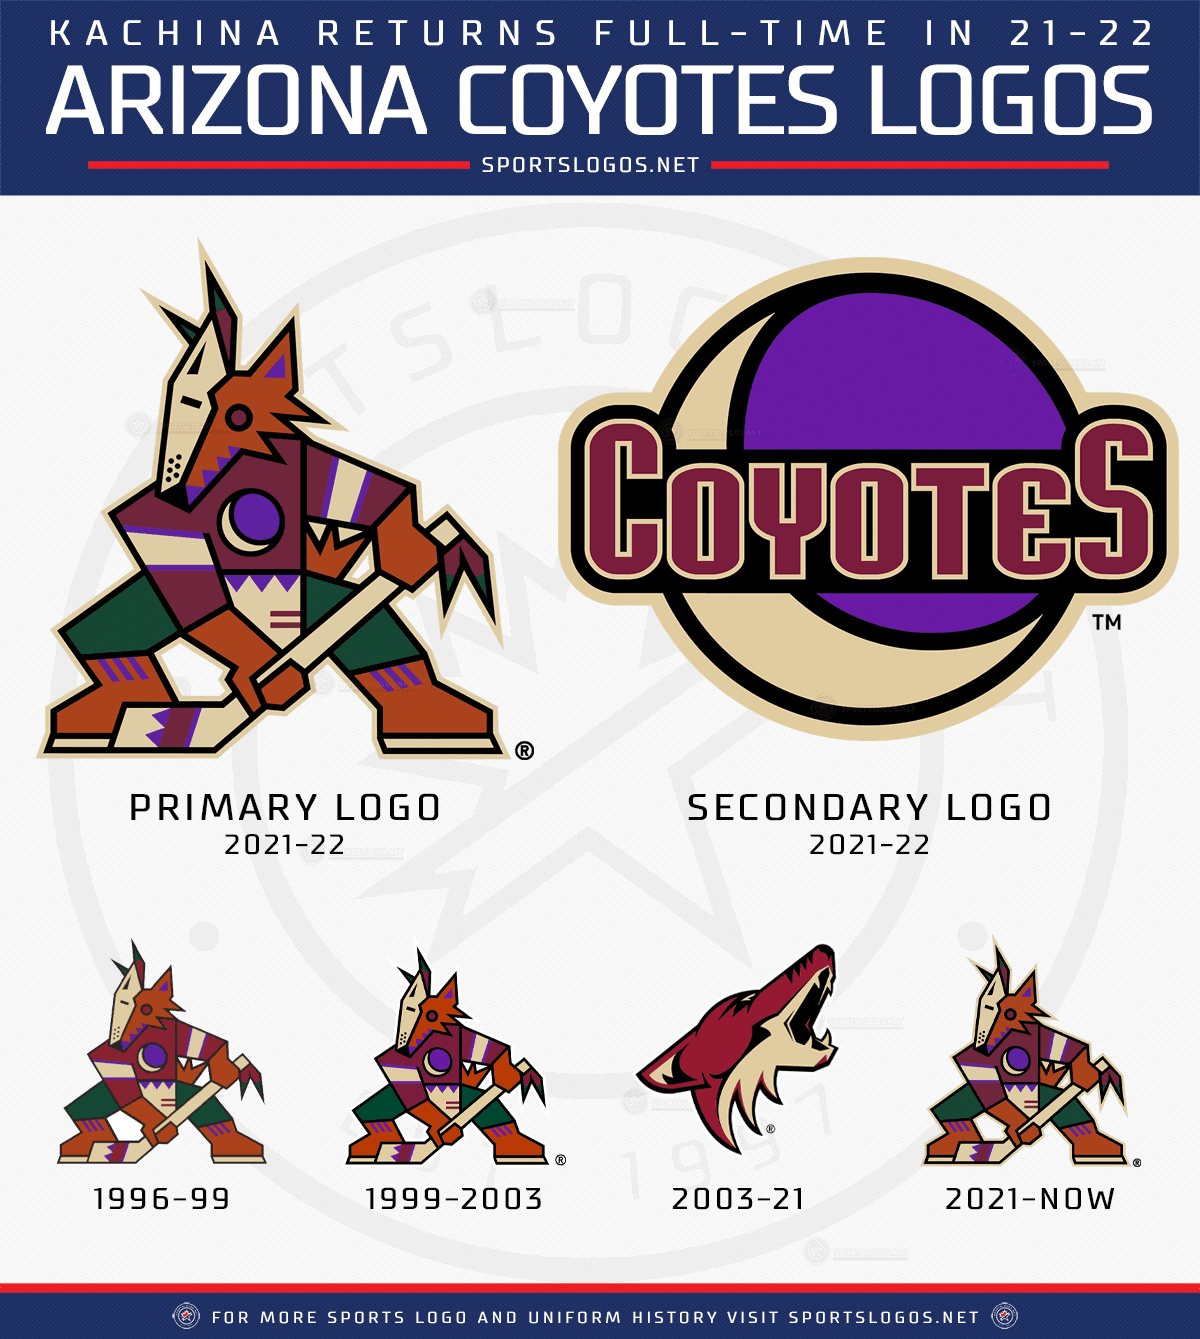 The Arizona Coyotes' New Uniforms